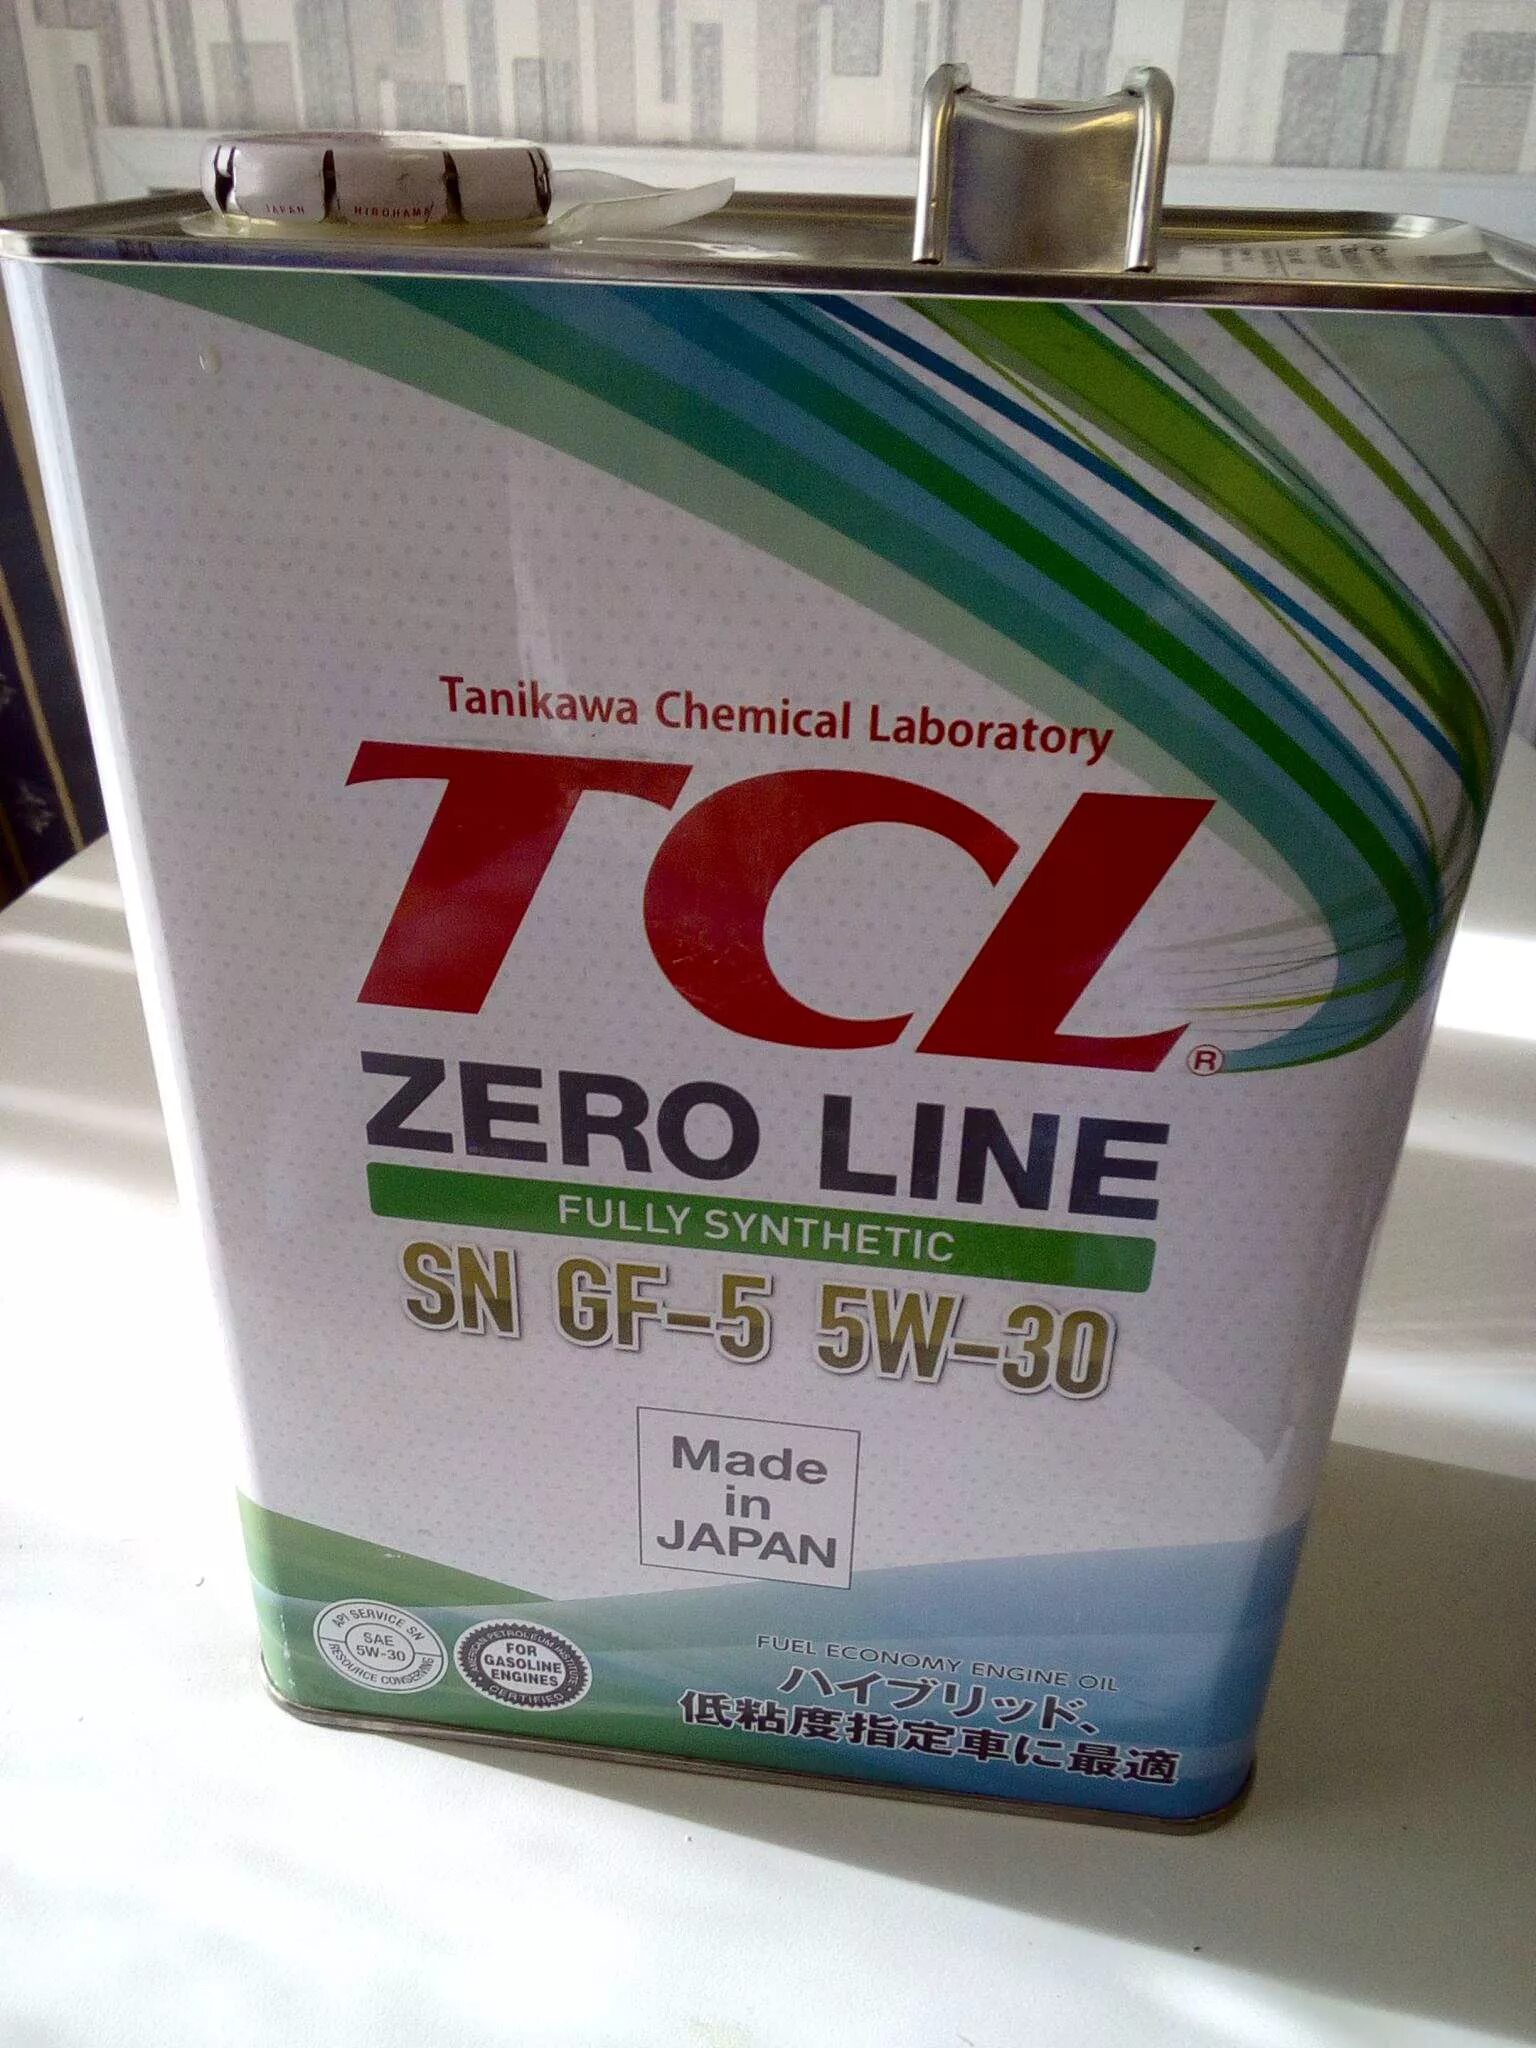 TCL Zero line 5w30. Масло TCL Zero line 5w-30. TCL SN gf-5 5w-30. TCL 5w-30 gf-5. Sn line